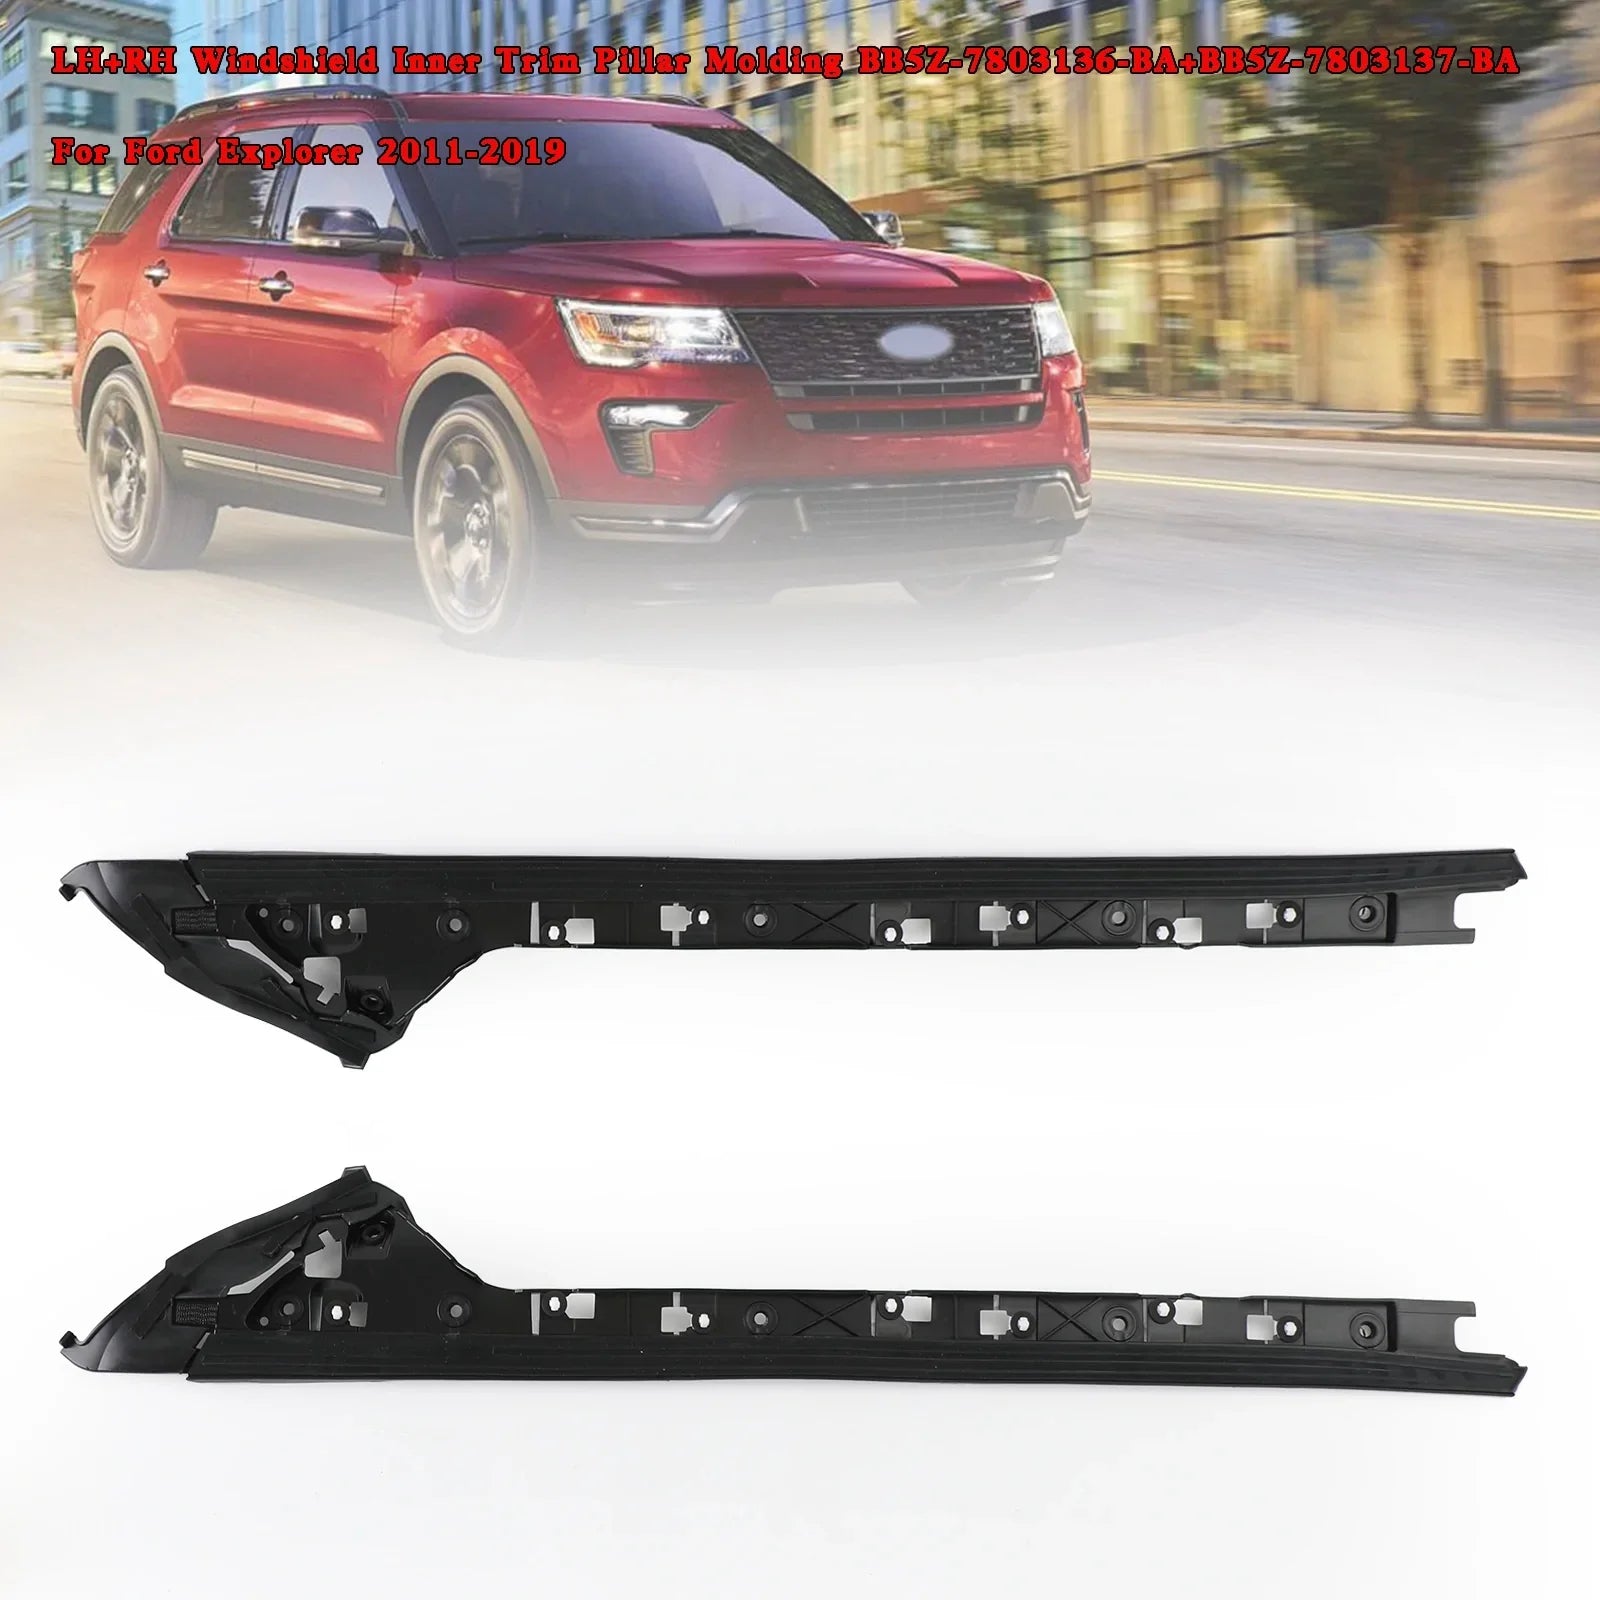 Moldura de pilar de moldura interior de parabrisas LH+RH para Ford Explorer 2011-2019 Genérico